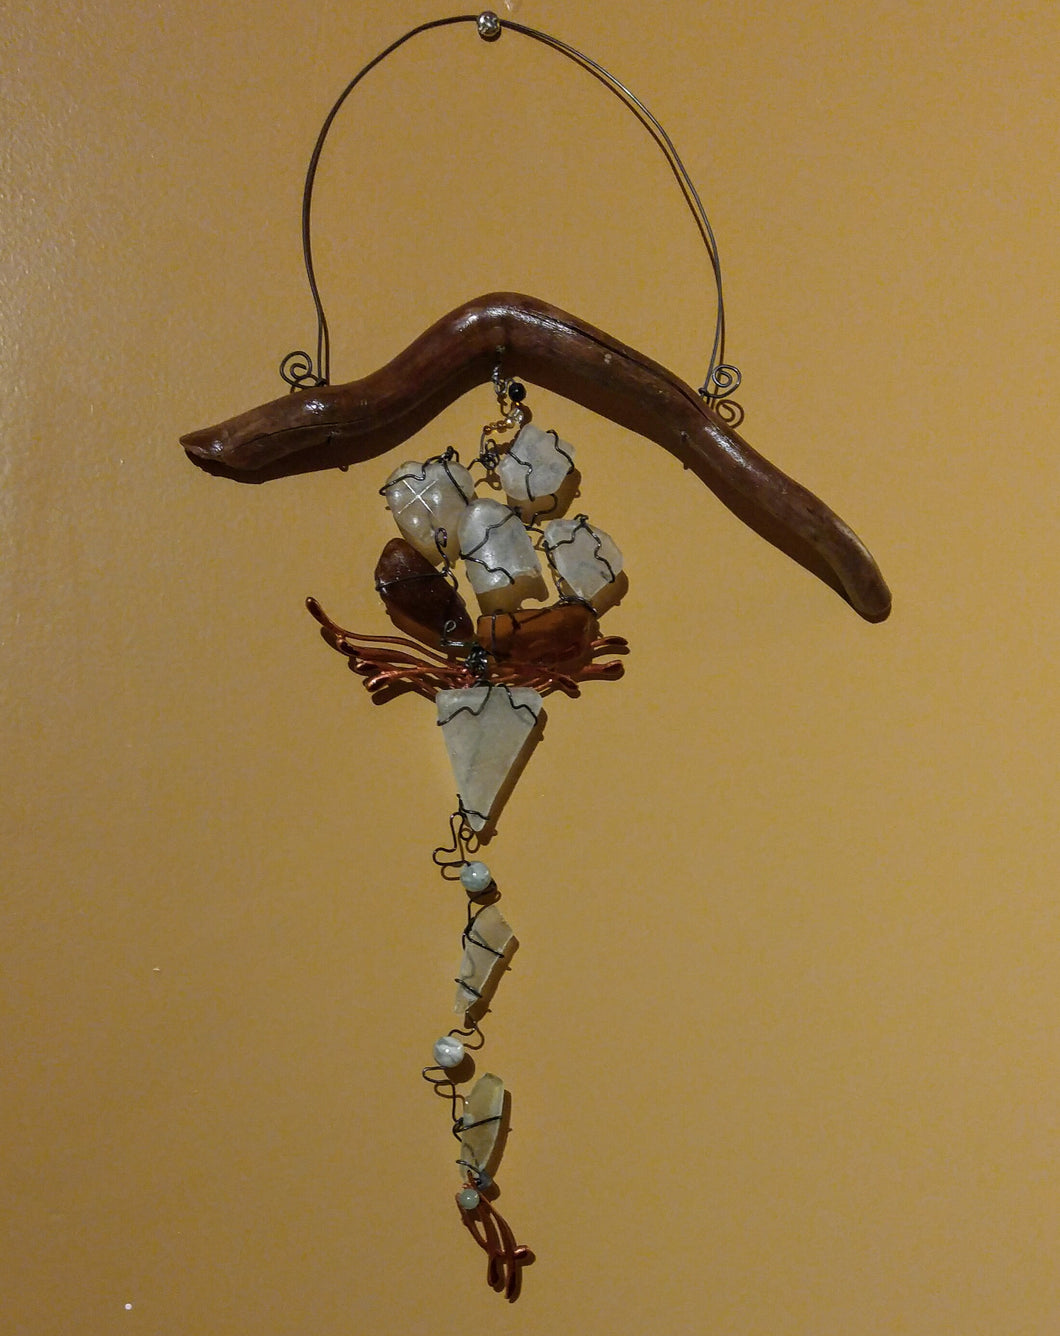 Seaglass & driftwood flower hanging